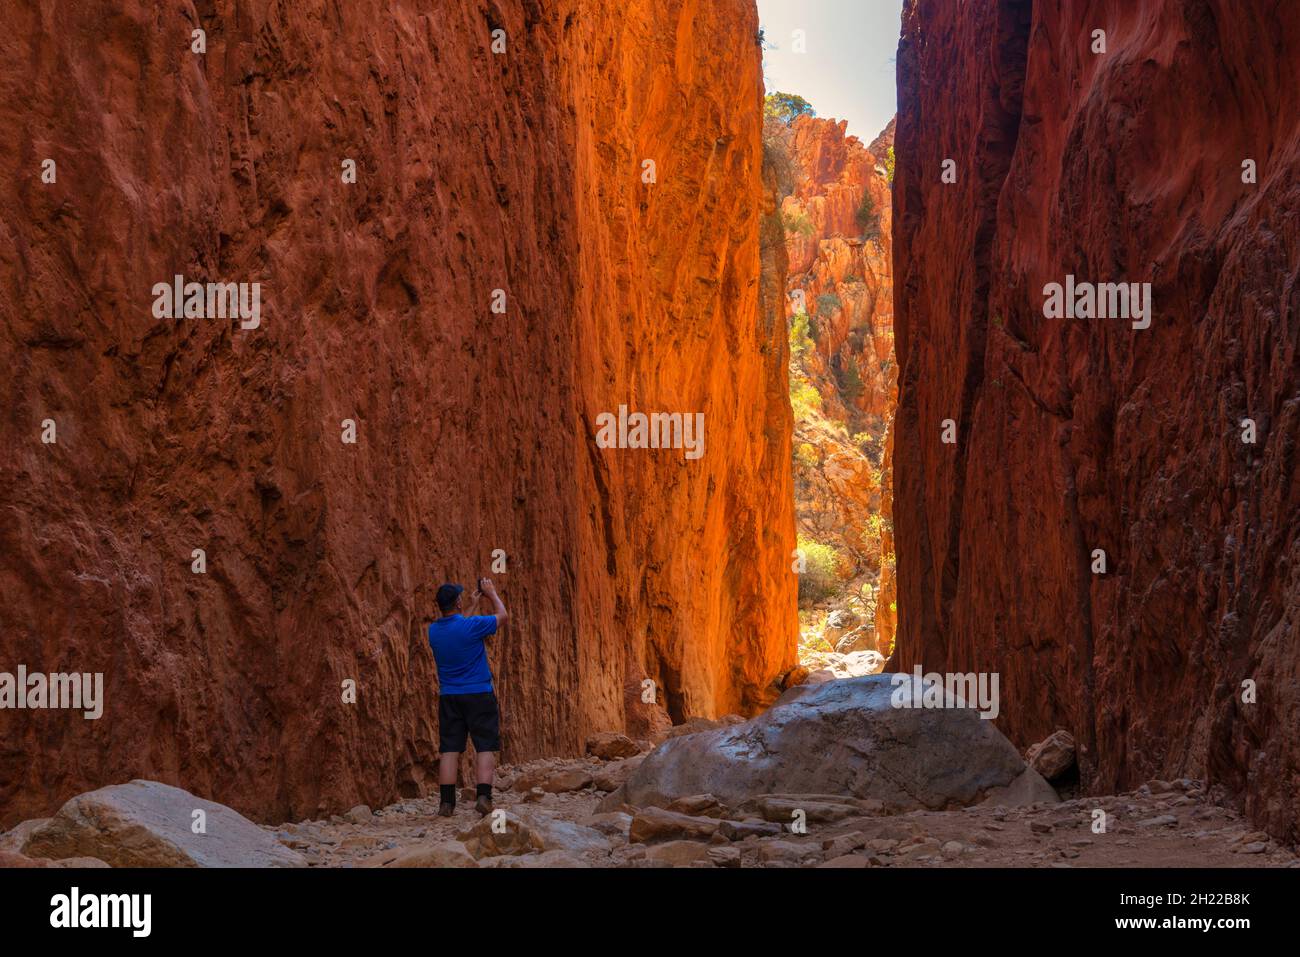 Homme aventureux prenant une photo des falaises rocheuses de Standley Chasm en Australie Banque D'Images